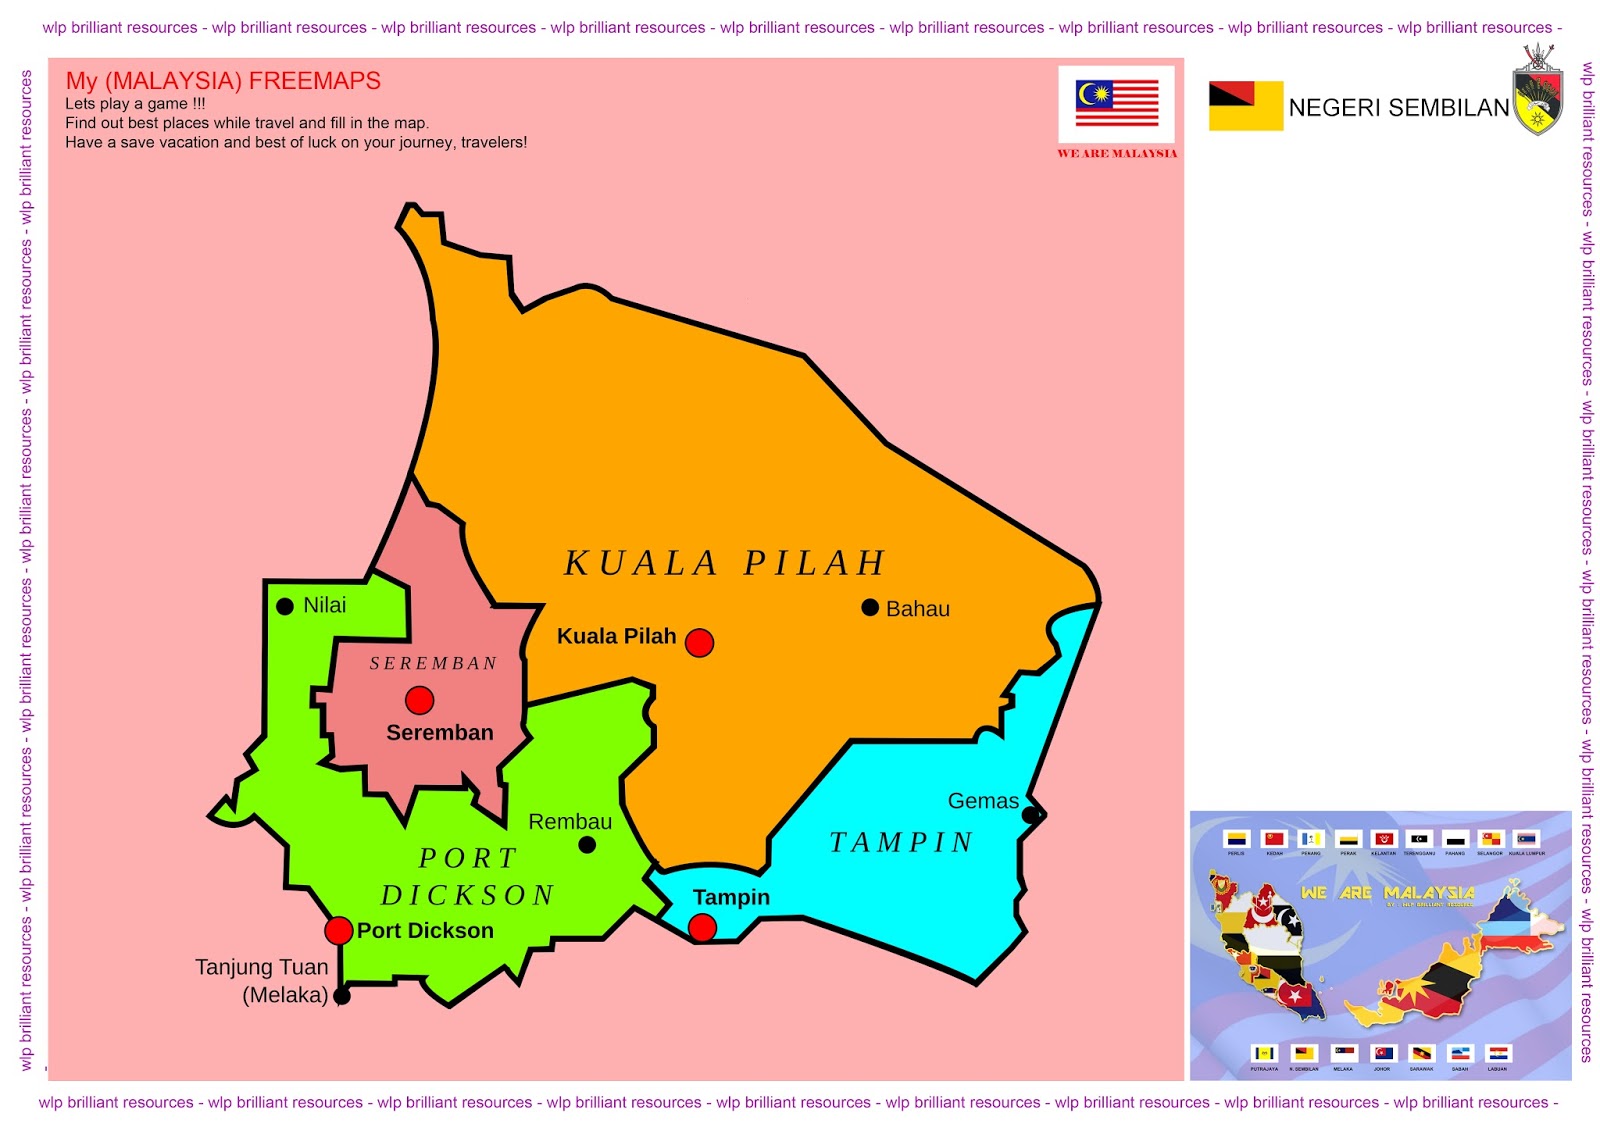 map of negeri sembilan